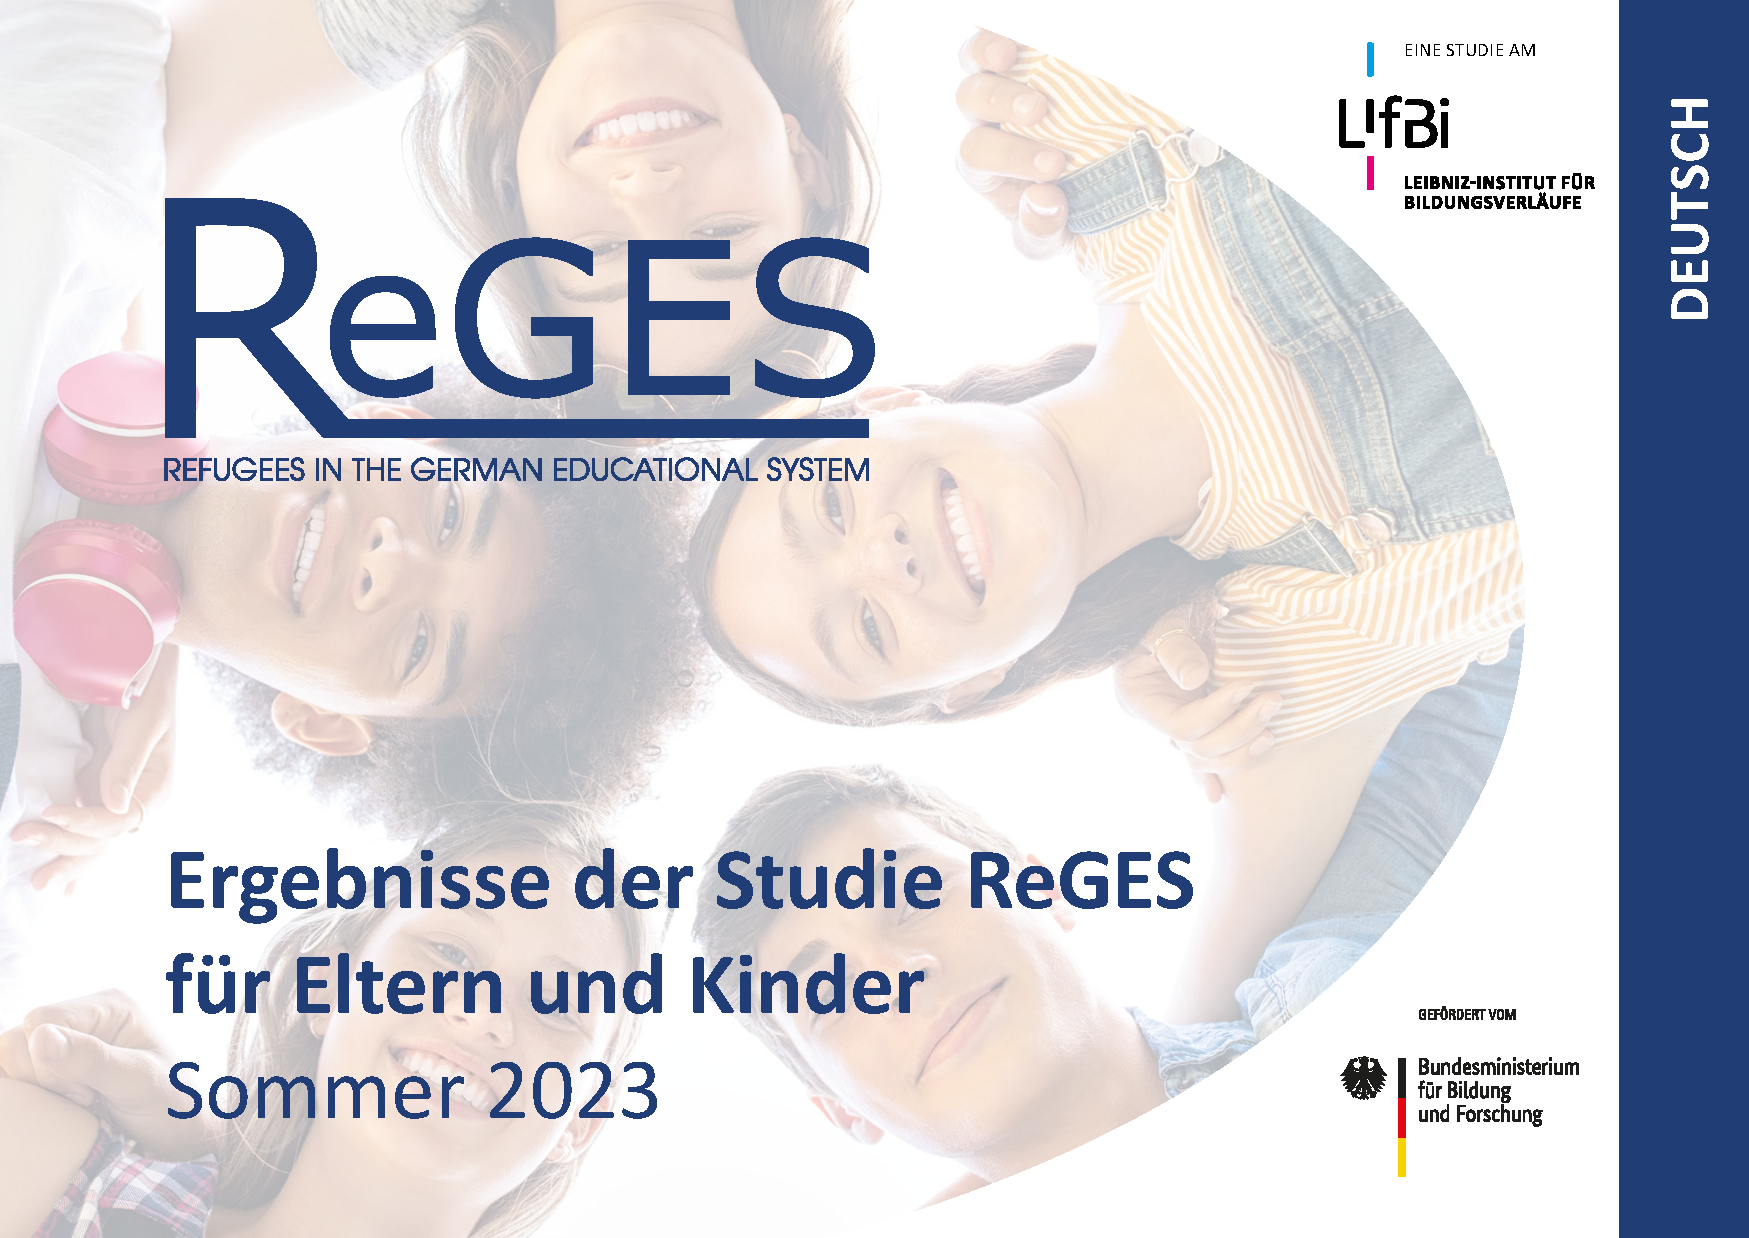 Ergebnisflyer 2023 für junge Schülerinnen und Schüler zur Studie ReGES (Deutsch)